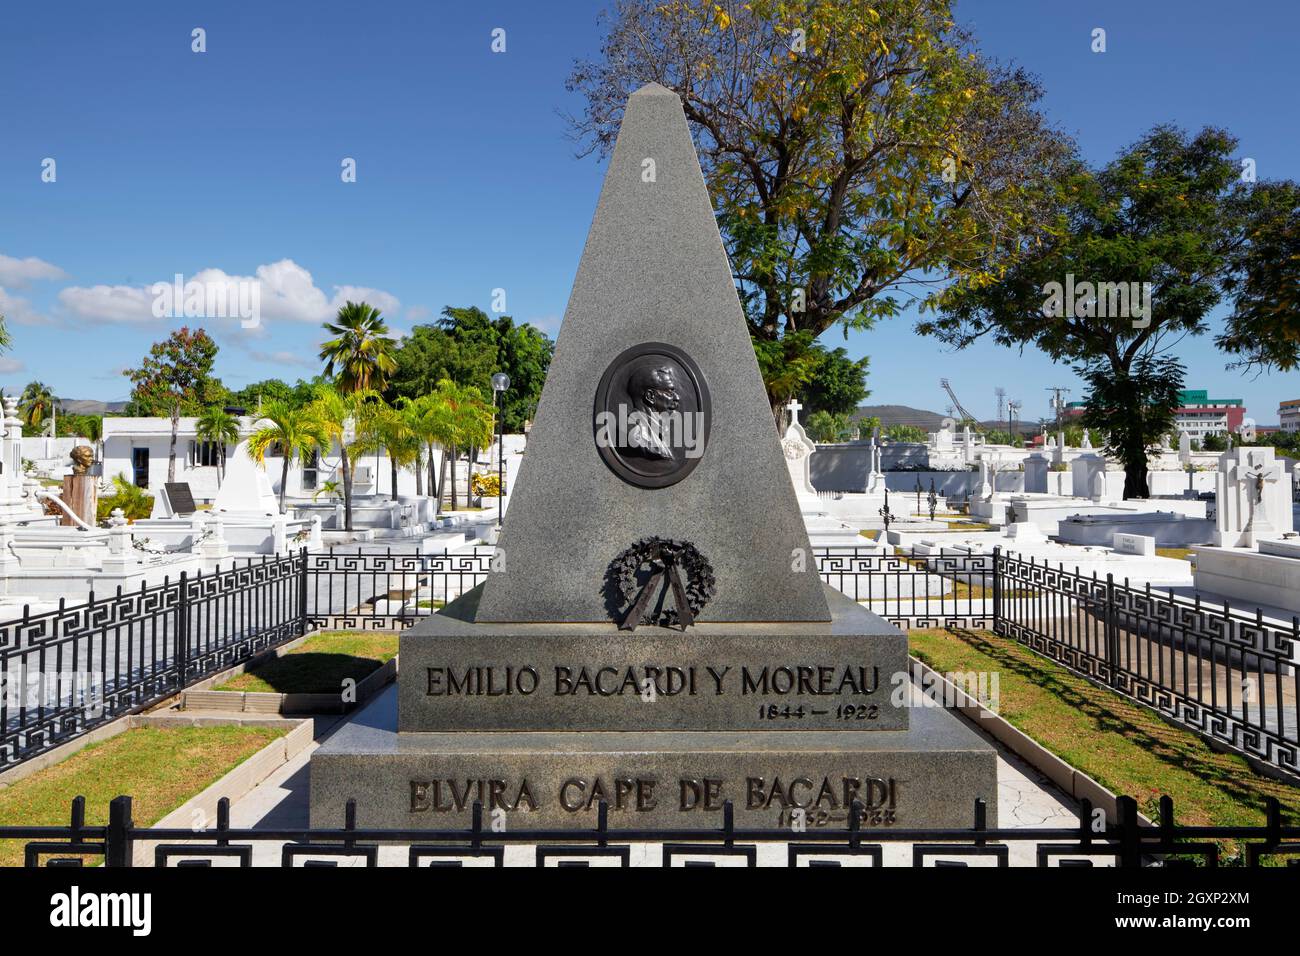 Grab von Emilio Bacardi Moreau 1844-1922, kubanischer Industrialist, Politiker und Schriftsteller, RAN Bacardi Rum Company, erster demokratisch gewählter Bürgermeister von Stockfoto